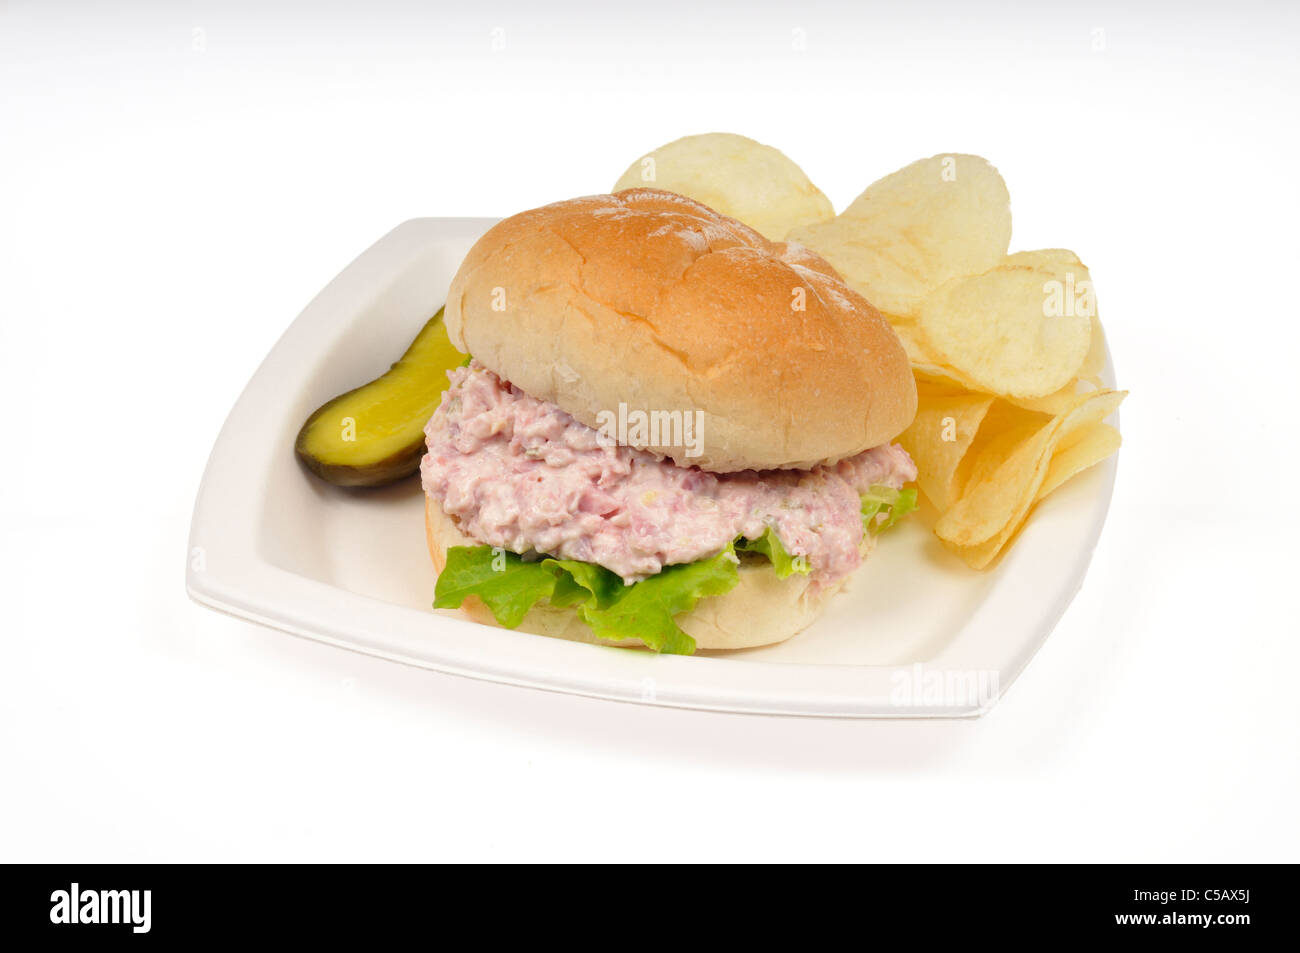 Insalata di prosciutto sandwich con mayo e lattuga in un rotolo con patate fritte e sottaceti nel vassoio bianco su sfondo bianco, tagliato fuori. Foto Stock